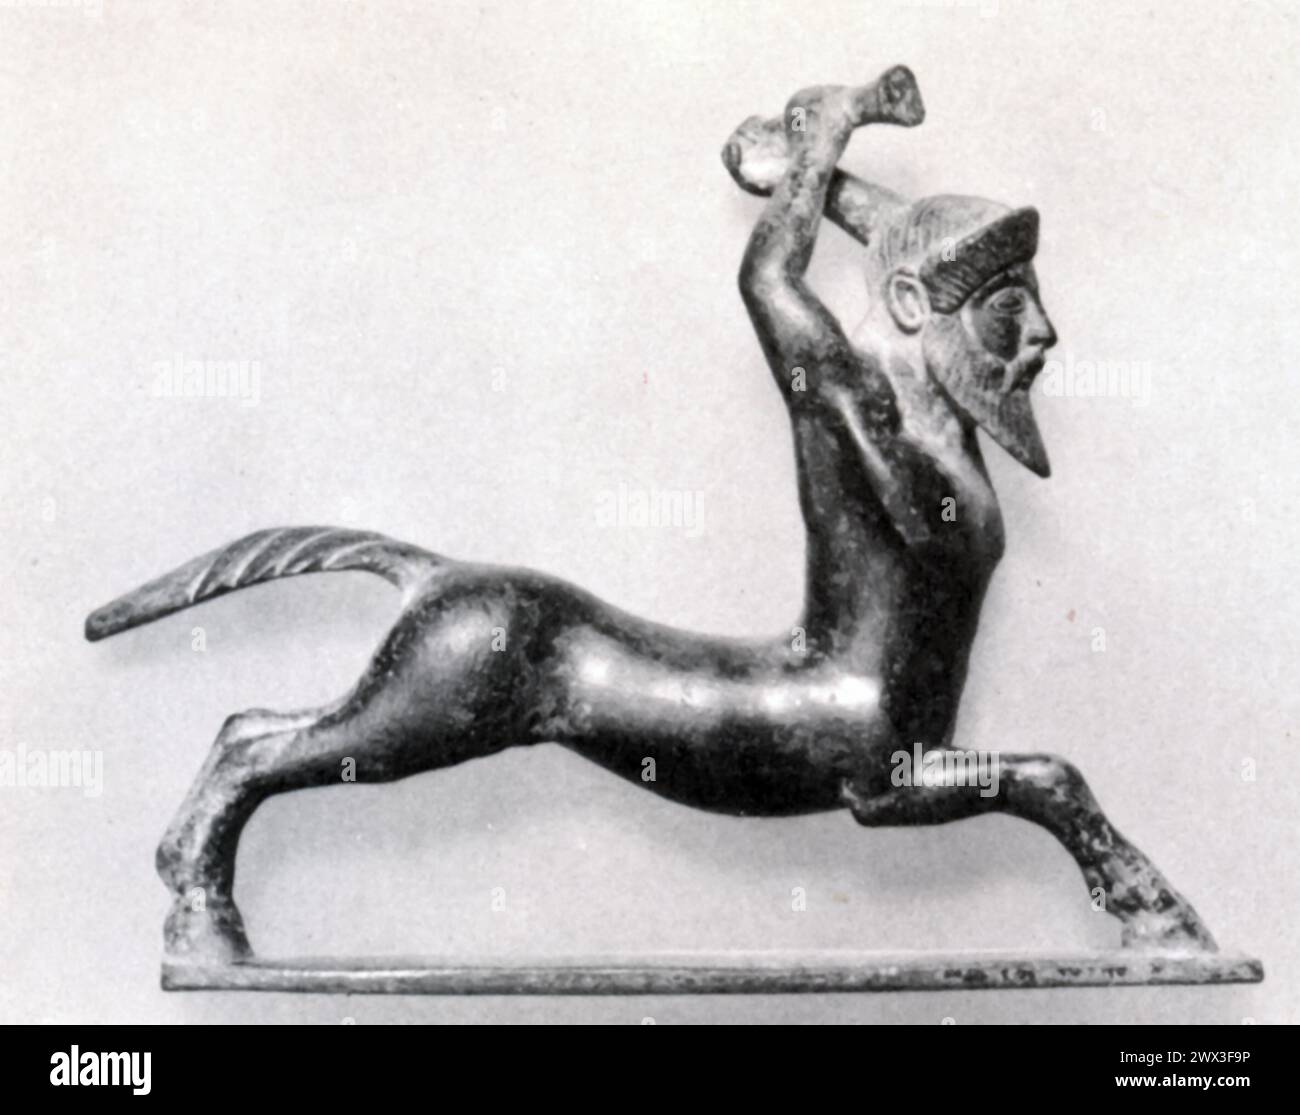 Une statuette en bronze représentant un centaure en bataille, originaire de Grèce au vie siècle av. J.-C. les Centaures, créatures mythologiques avec le haut du corps d'un humain et le bas du corps d'un cheval, étaient des sujets populaires dans l'art et la mythologie grecs antiques, symbolisant souvent la double nature de l'homme combiner le rationnel et le sauvage. Banque D'Images